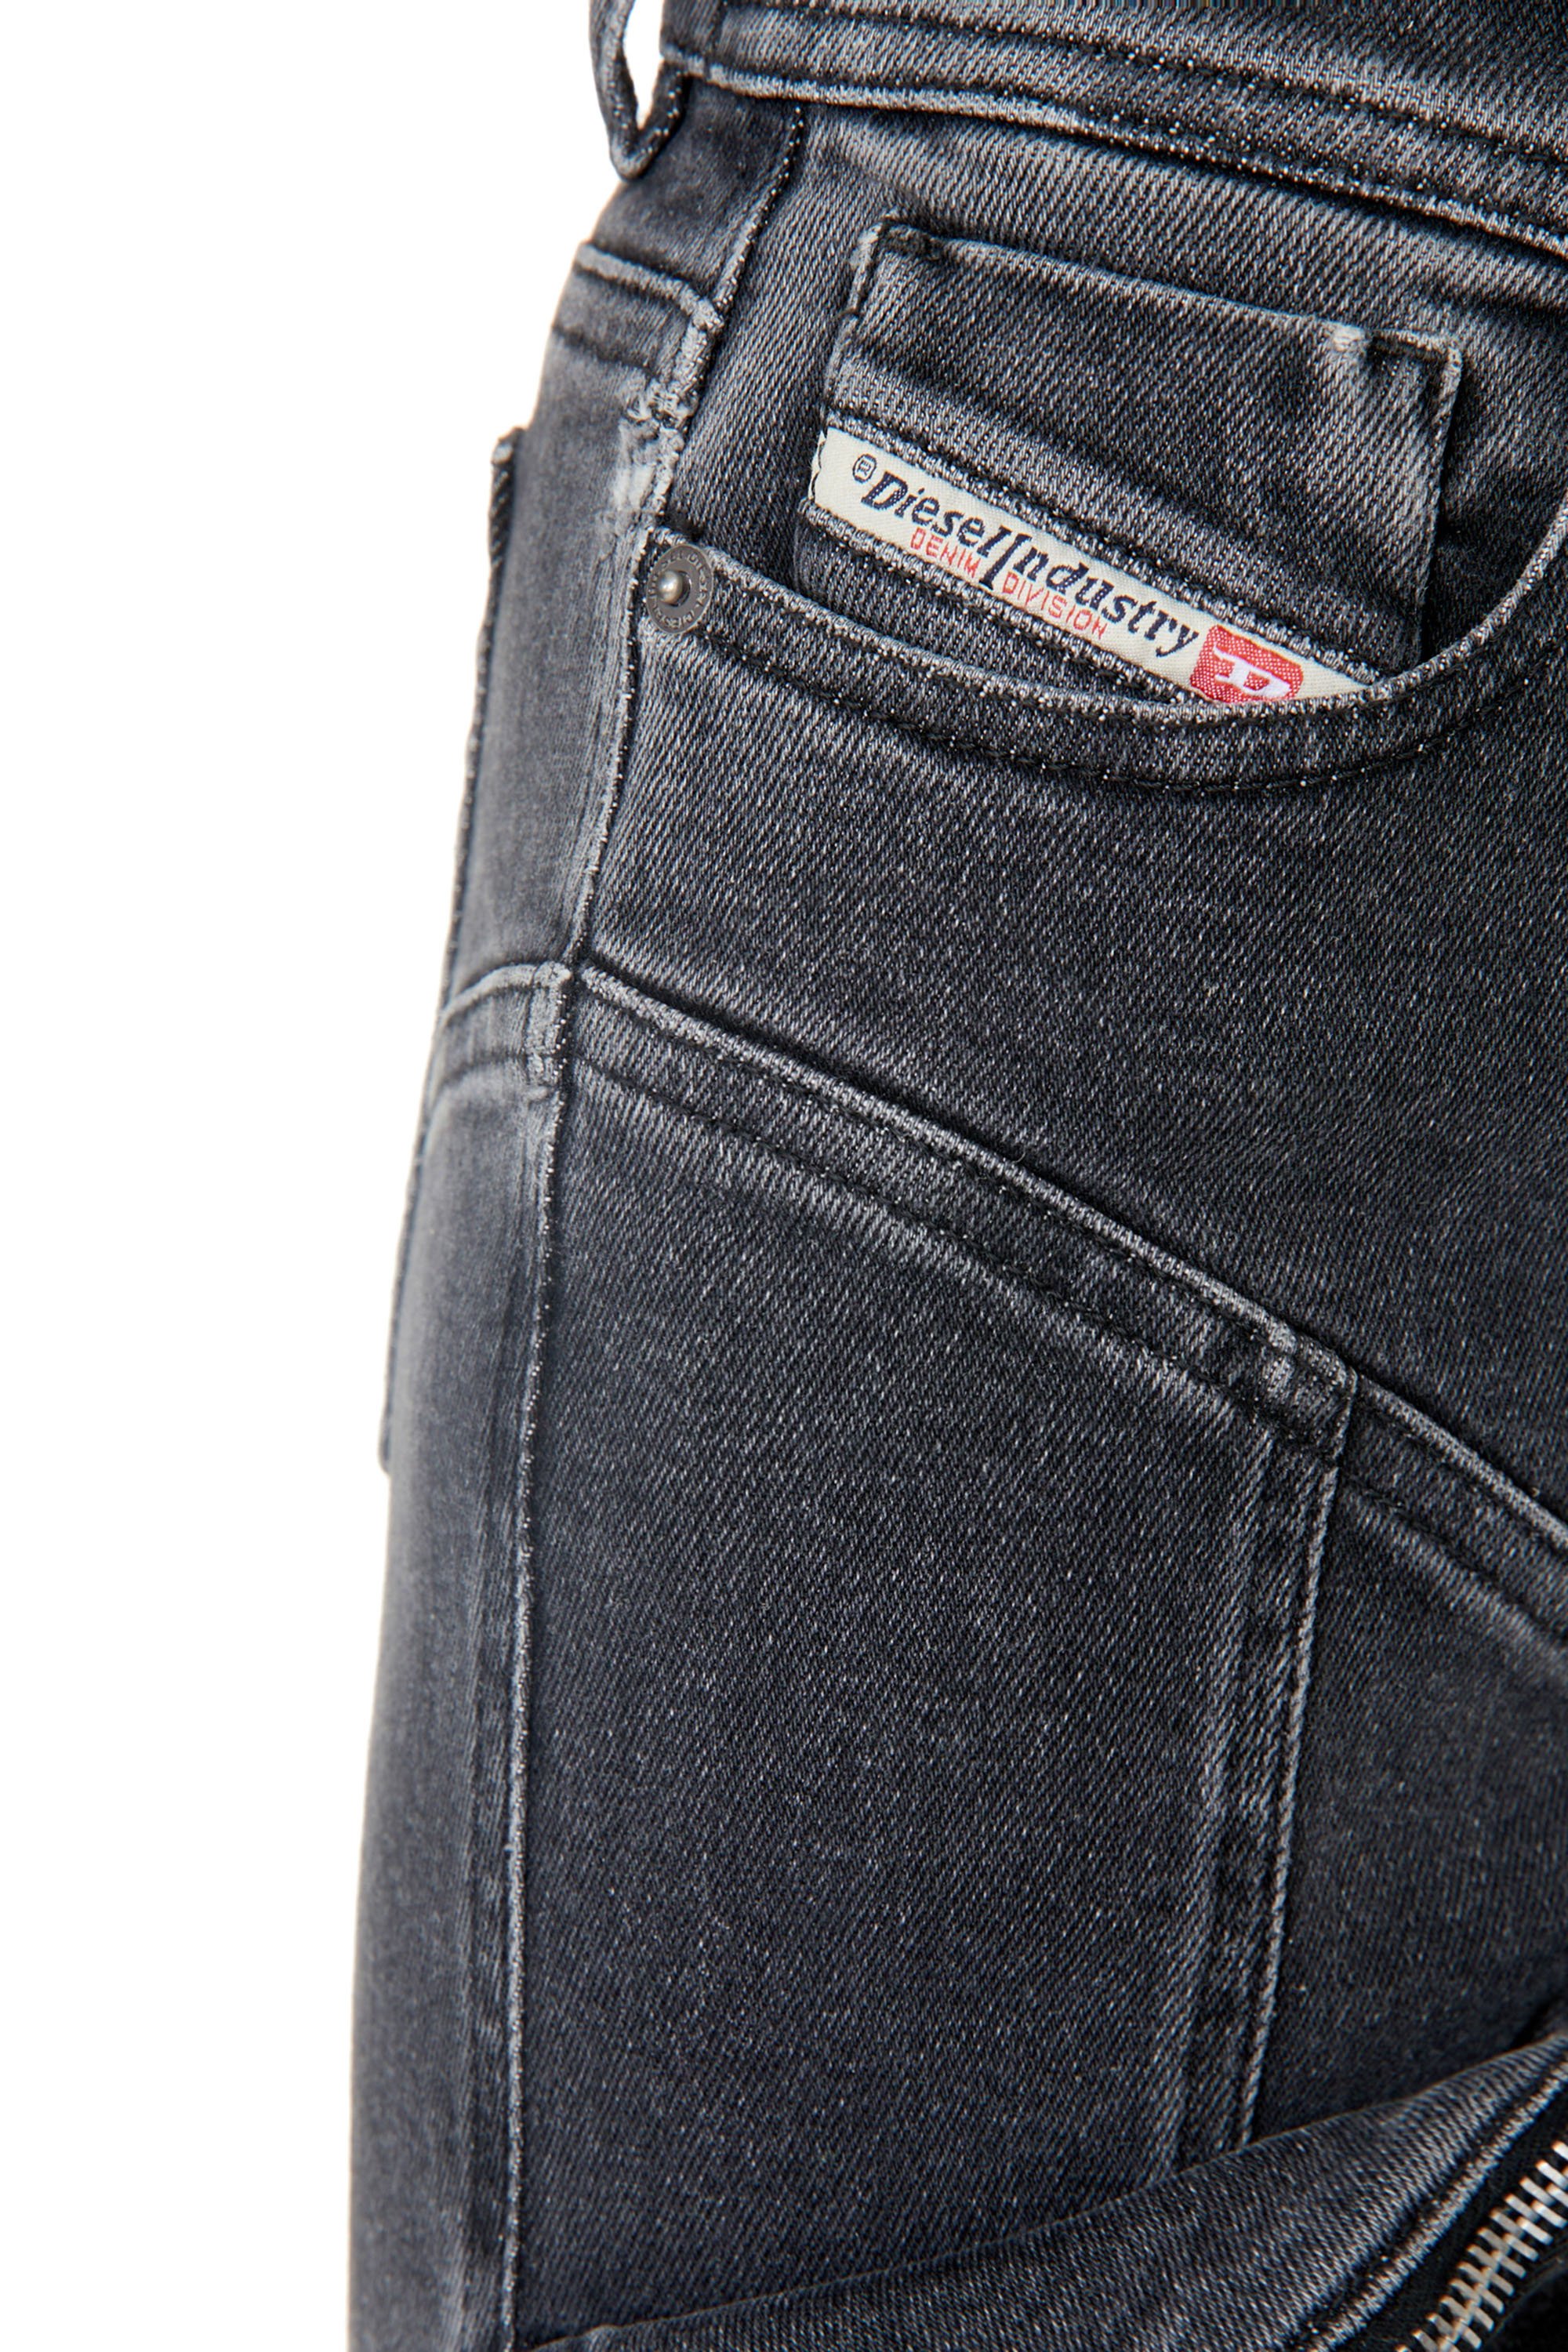 Diesel - Super skinny Jeans 1984 Slandy-High 09F27, Black/Dark grey - Image 3